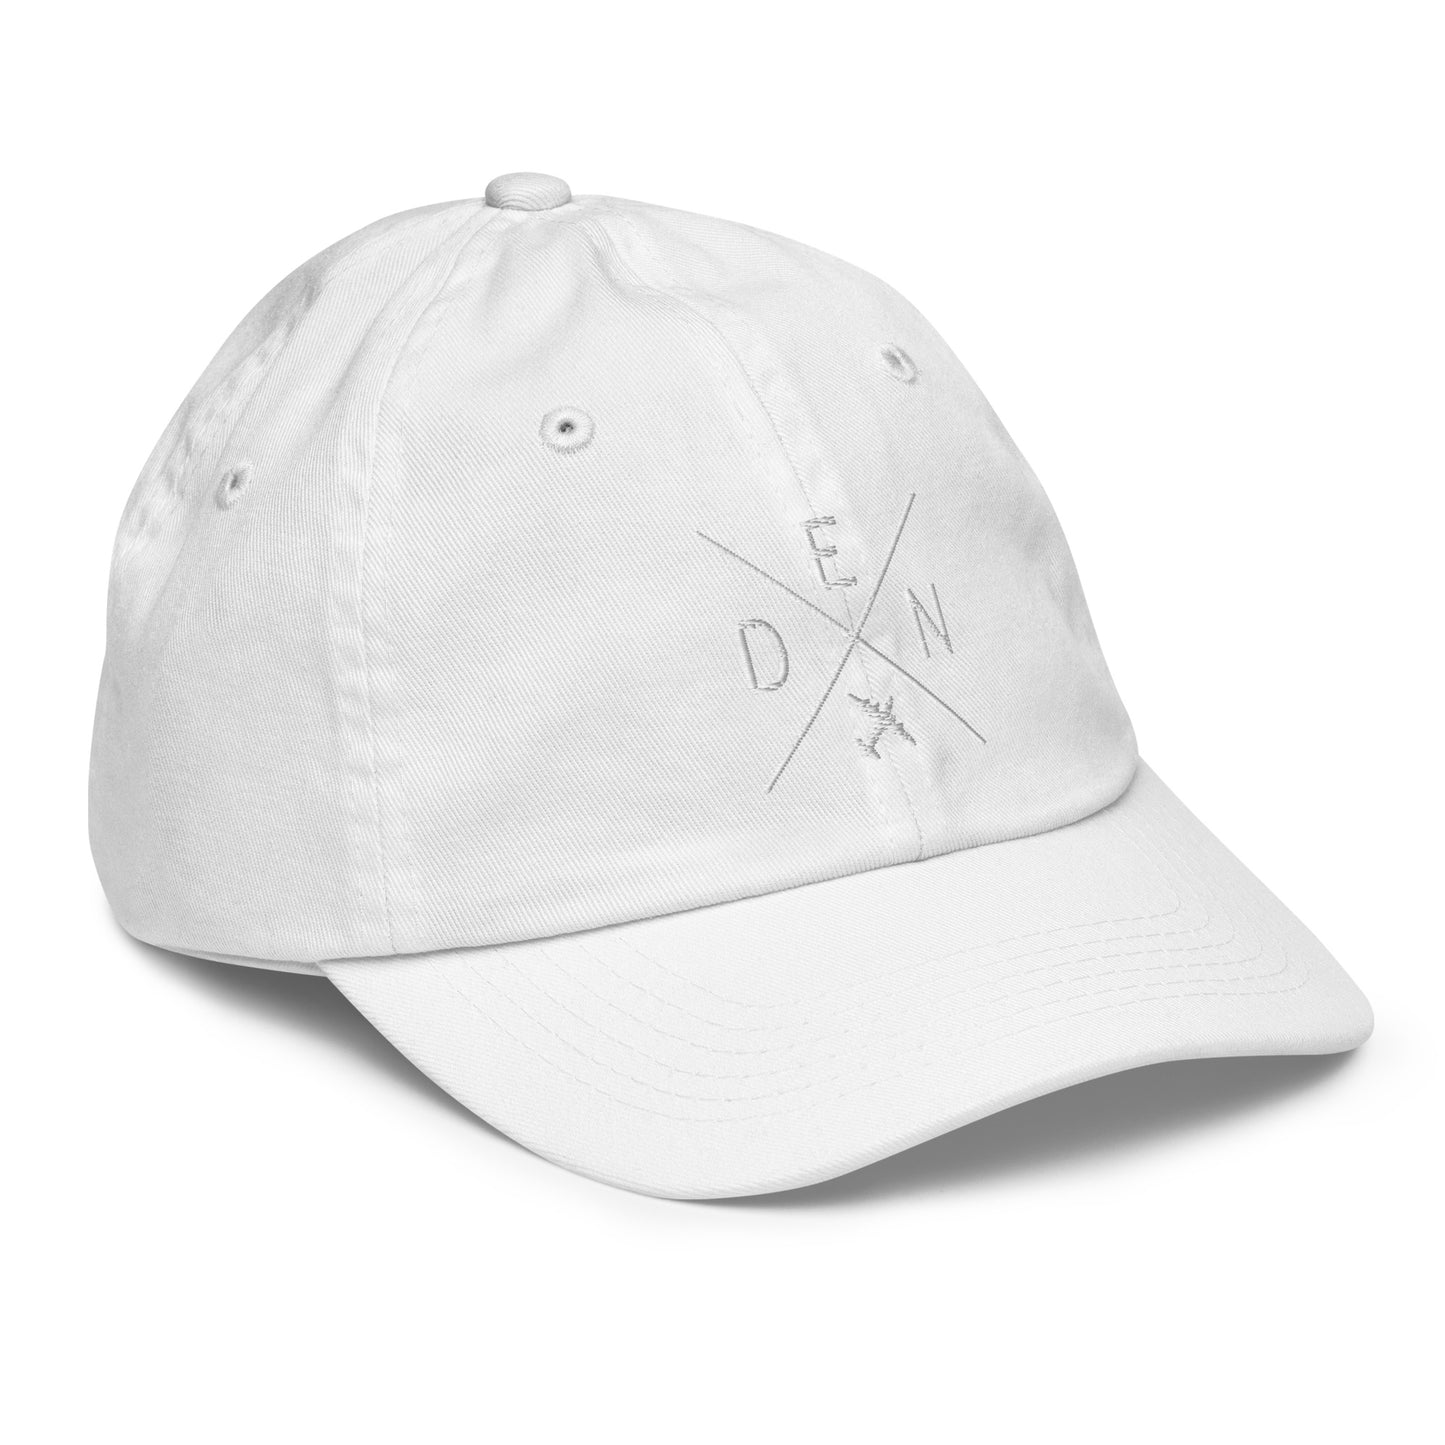 Crossed-X Kid's Baseball Cap - White • DEN Denver • YHM Designs - Image 35